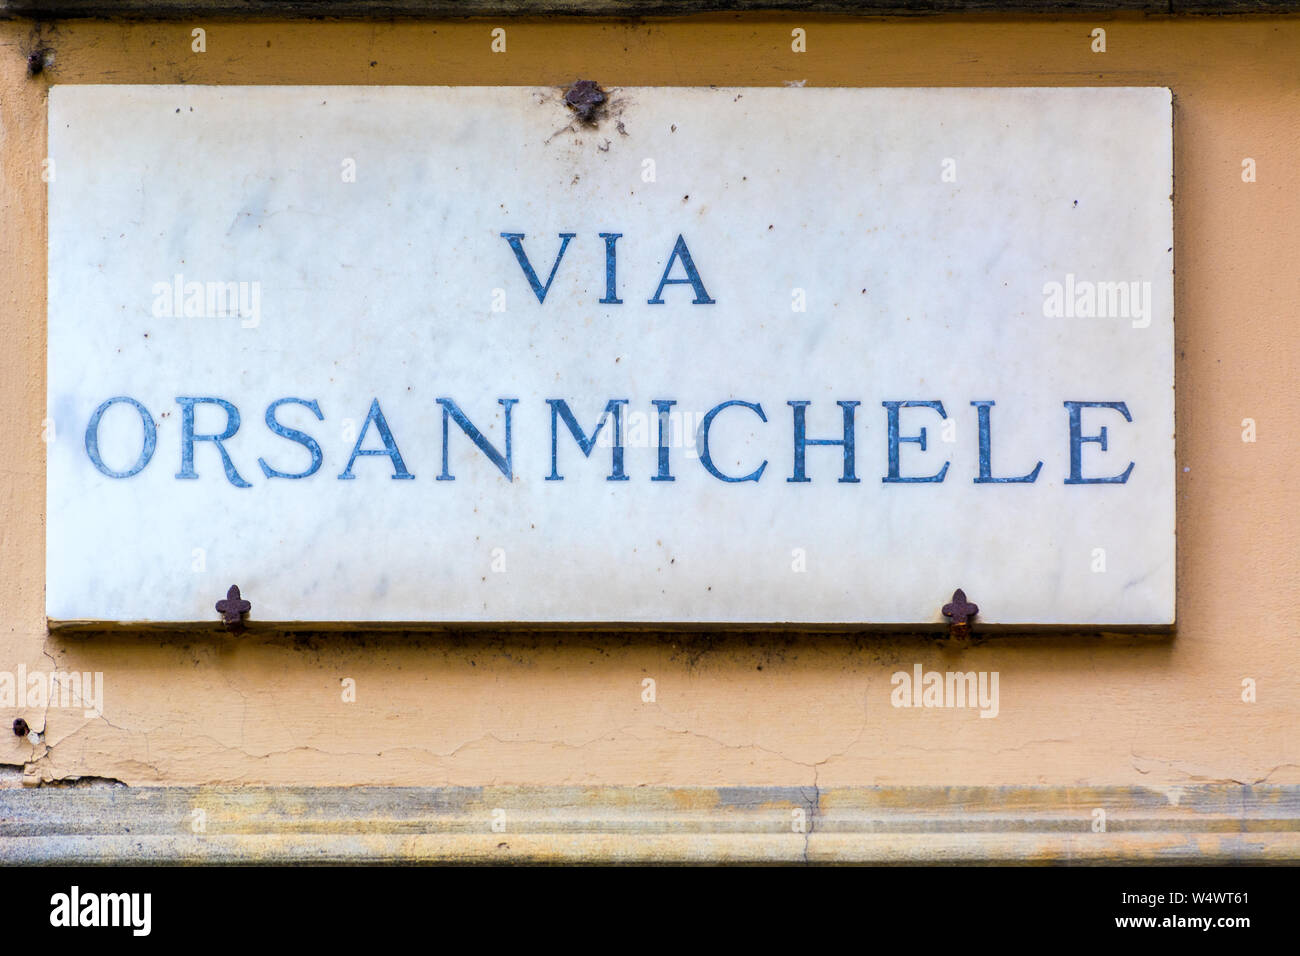 Firenze, Italia - 11 Maggio 2019: Via Orsanmichele strada segno sulla parete a Firenze, Italia Foto Stock